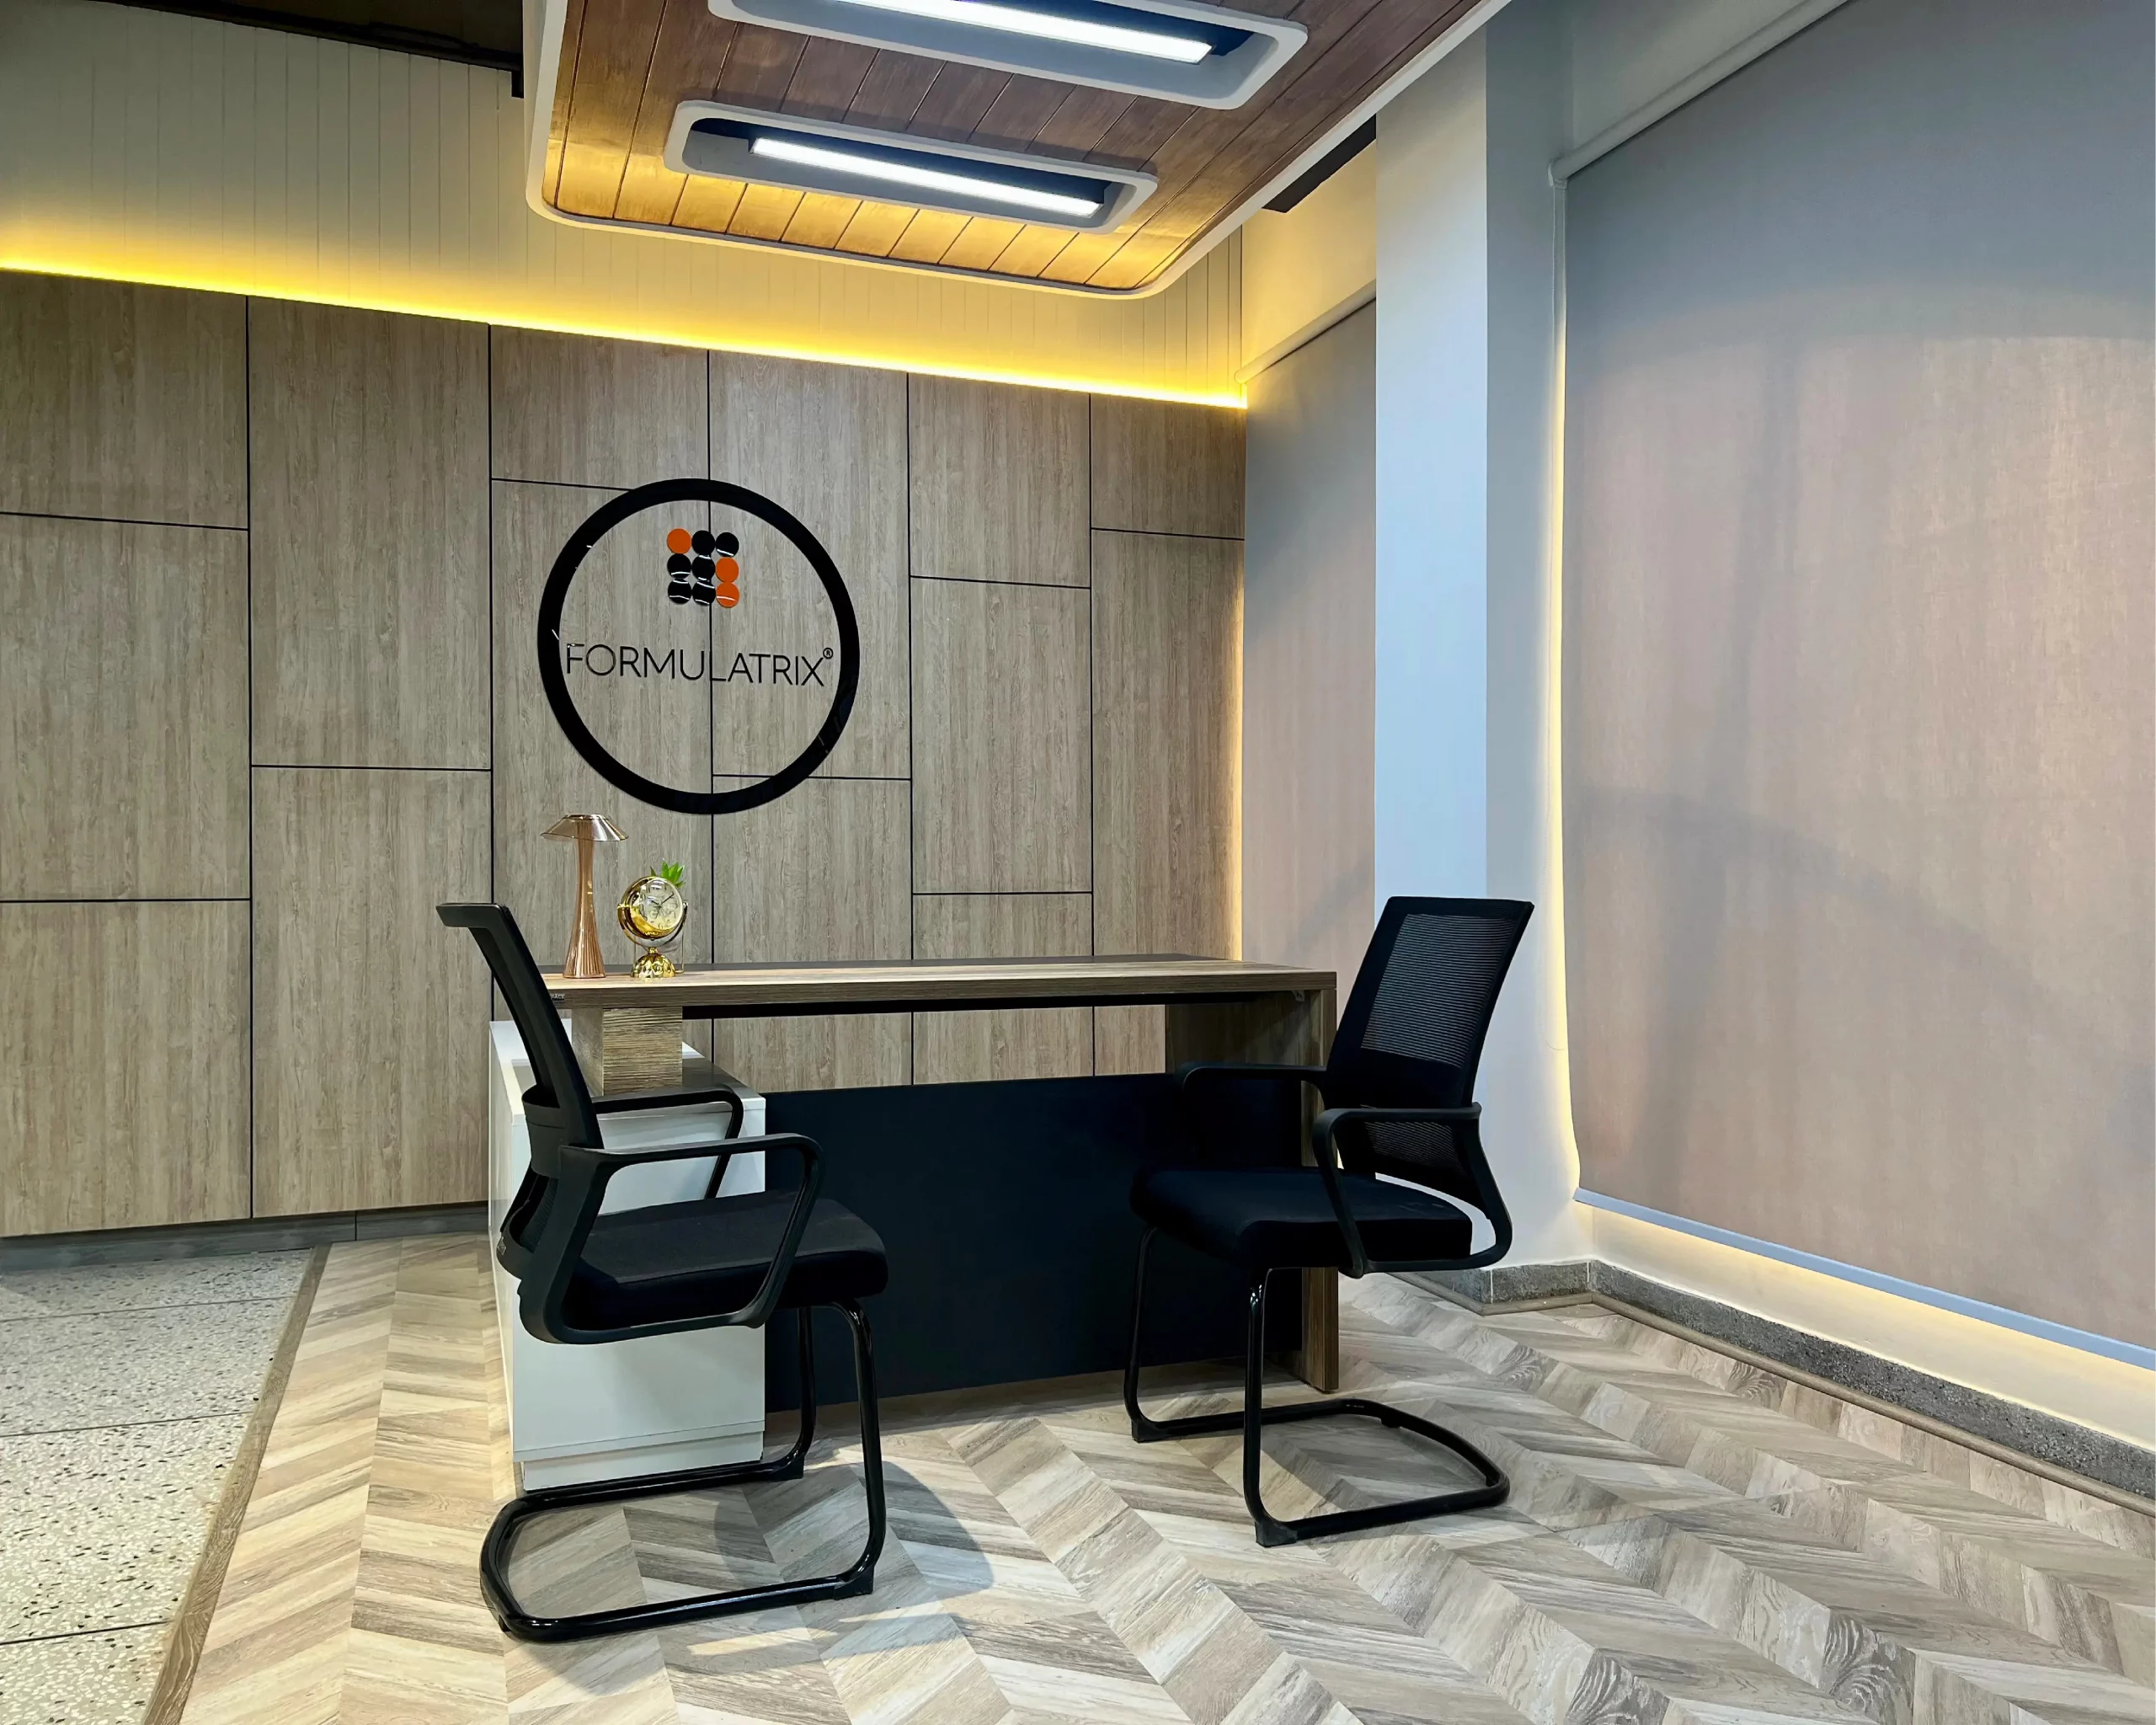 Customizable office furniture